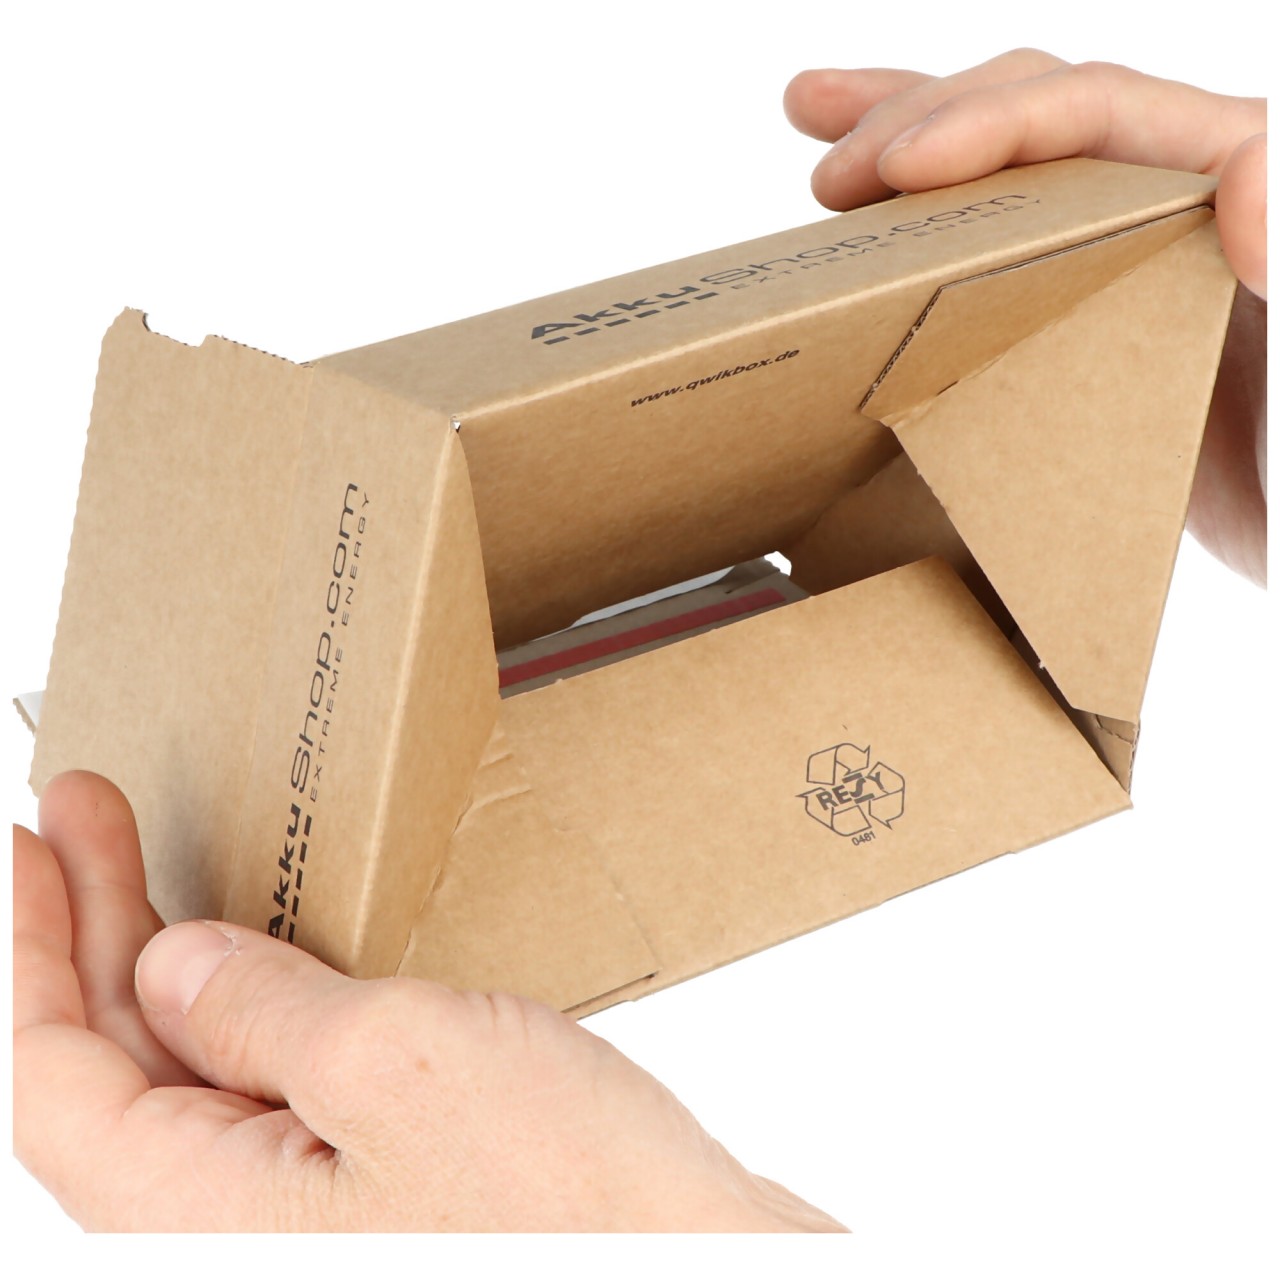 AkkuShop Qwikbox mit Selbstklebeverschluß und Aufreißfaden, verschiedene Größen, 1 Stück